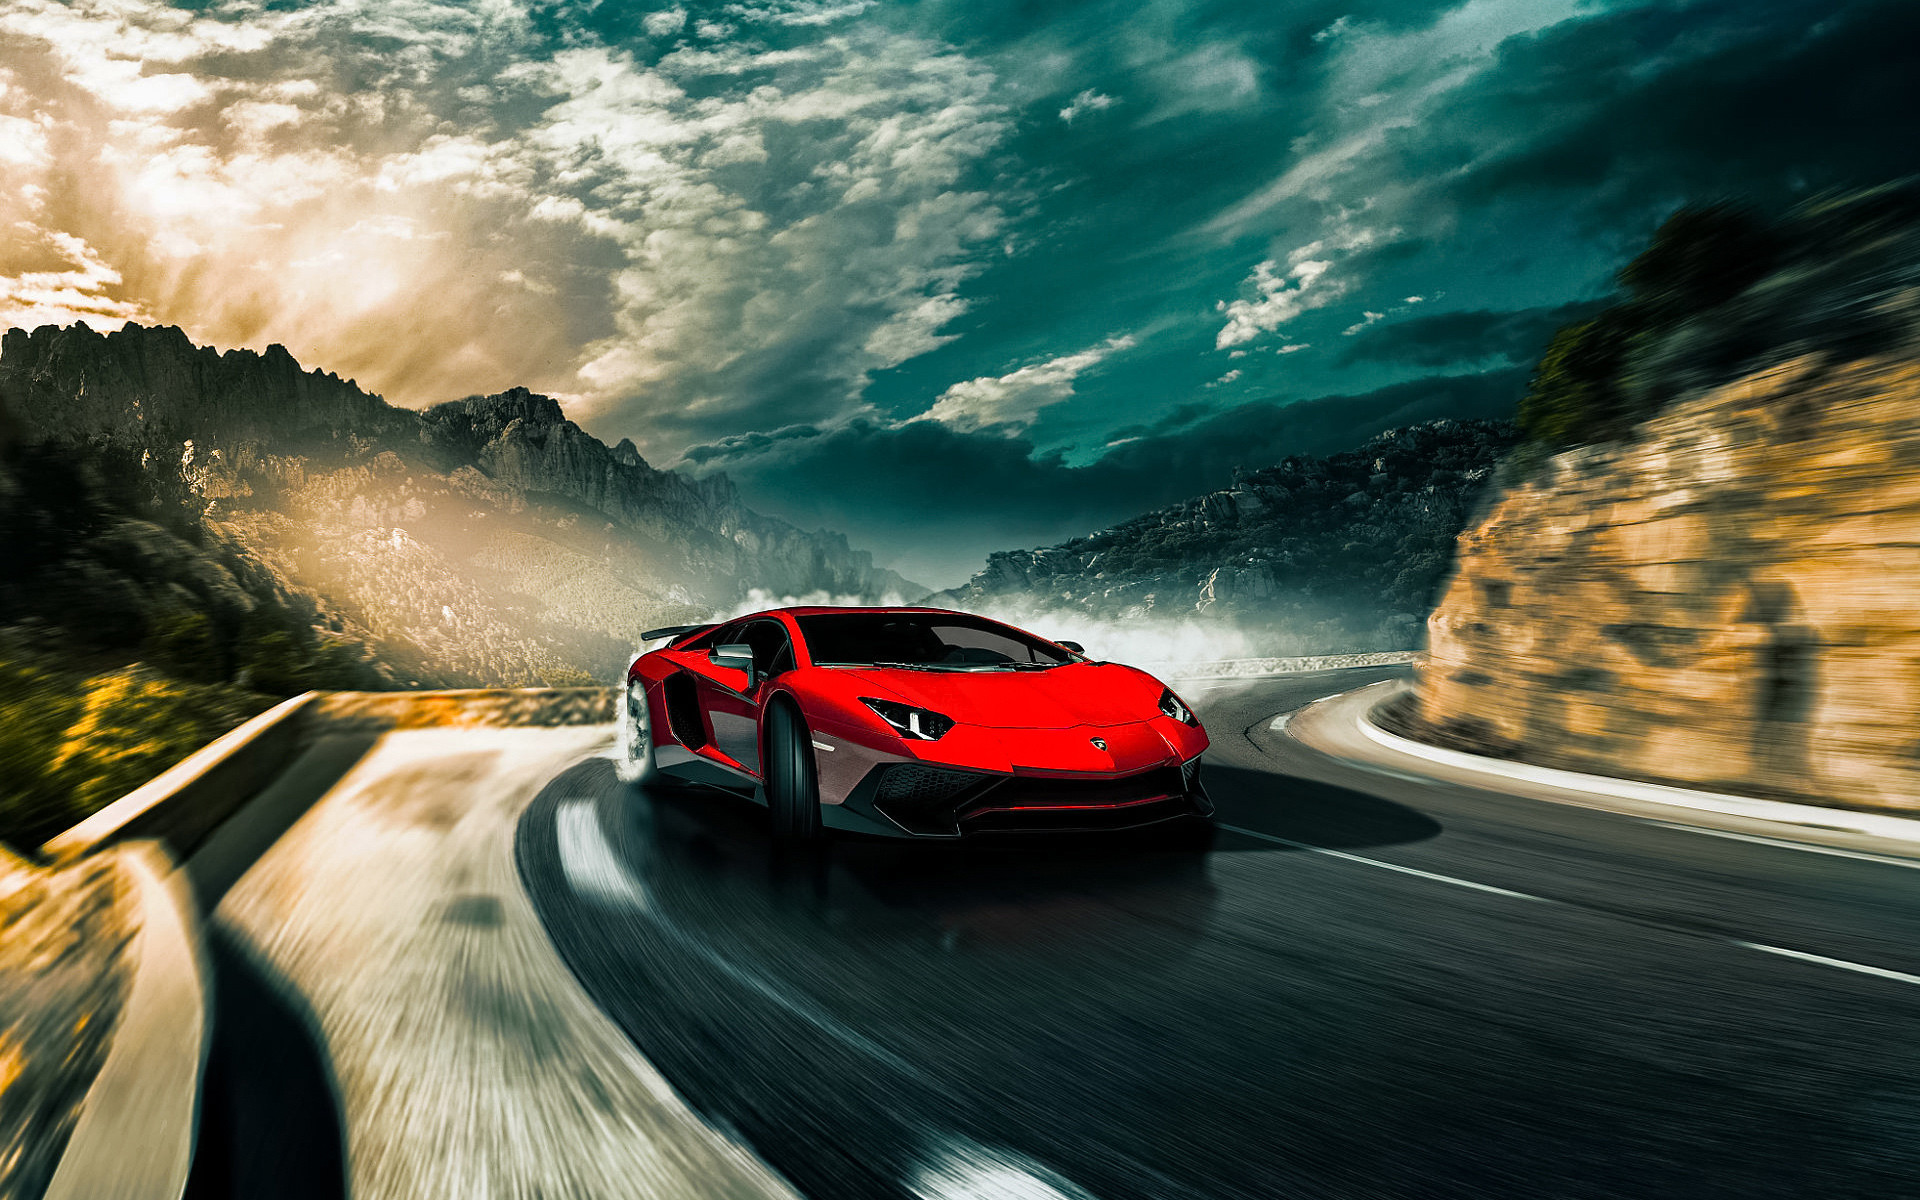 1920x1200 Lamborghini on Winding Road HD Wallpaper | Hintergrund |  |  ID:736532 - Wallpaper Abyss